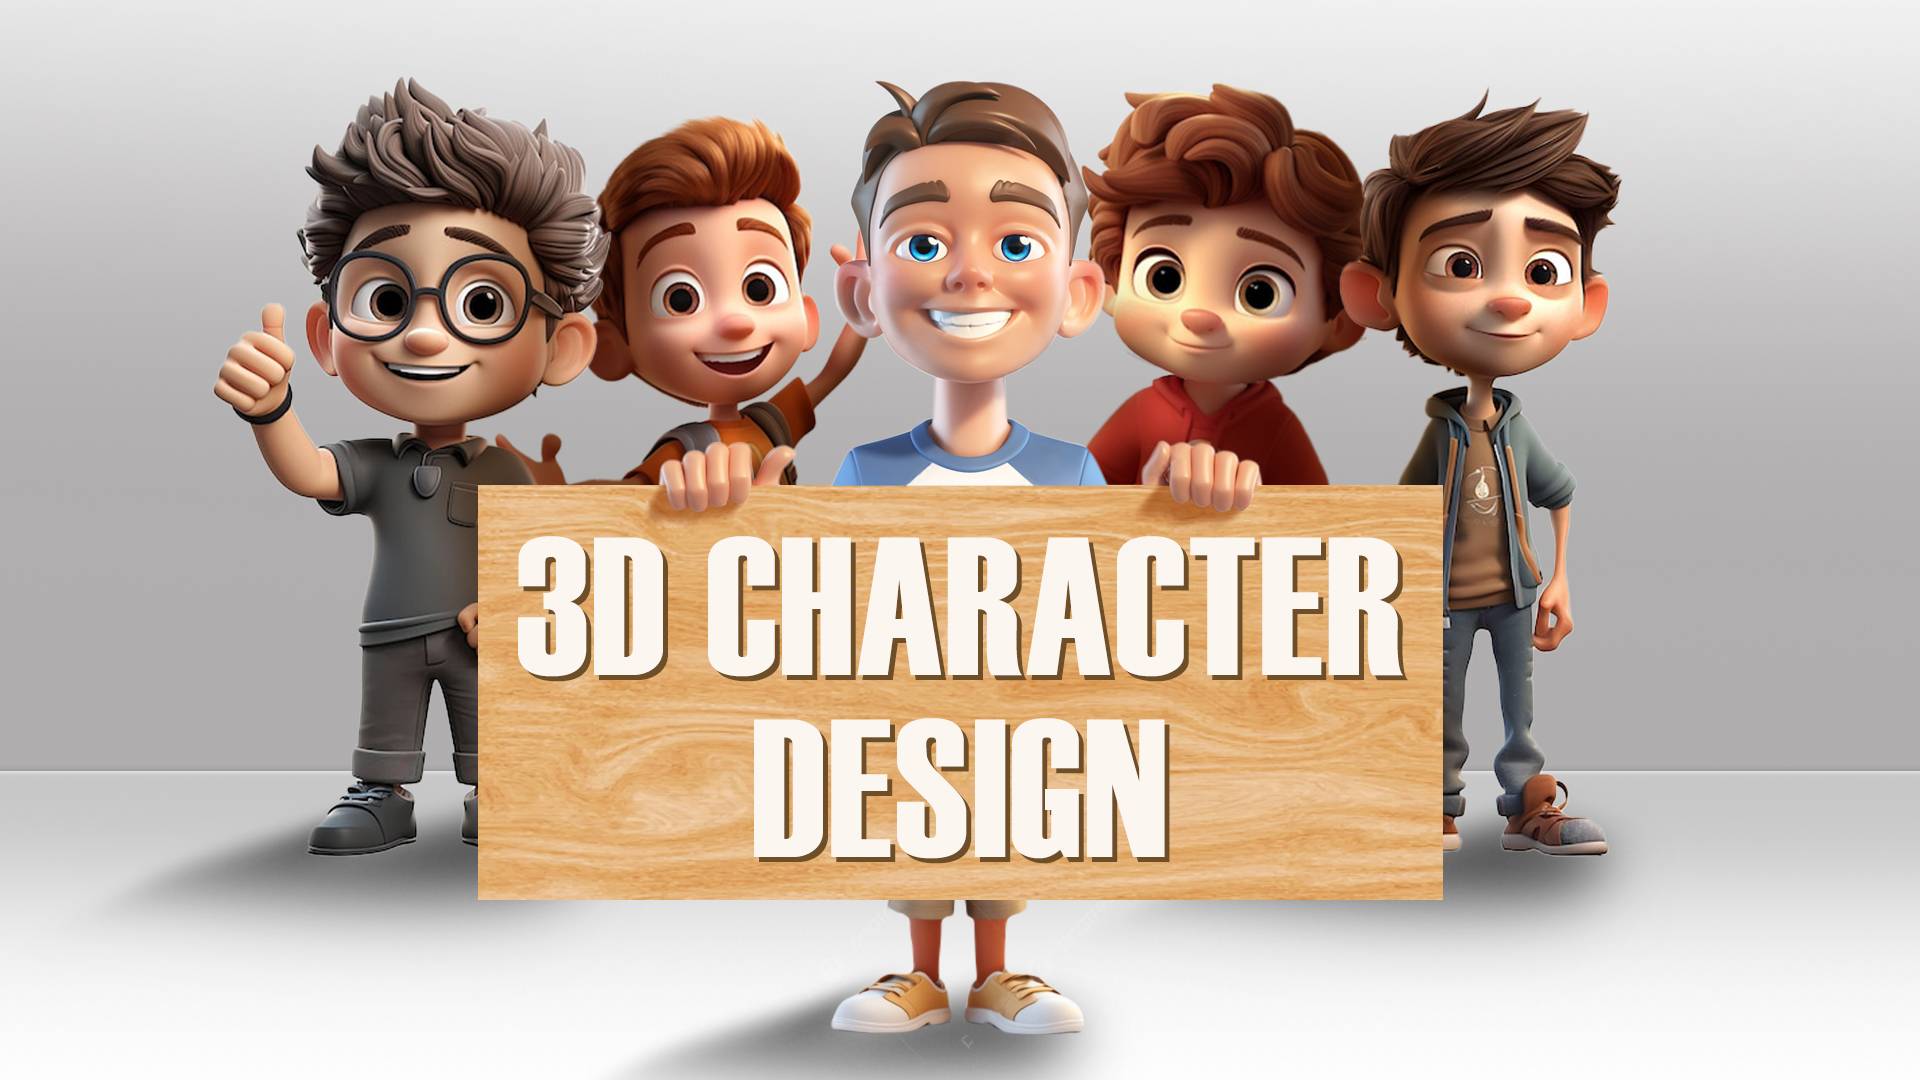 3D CHARACTER DESIGN